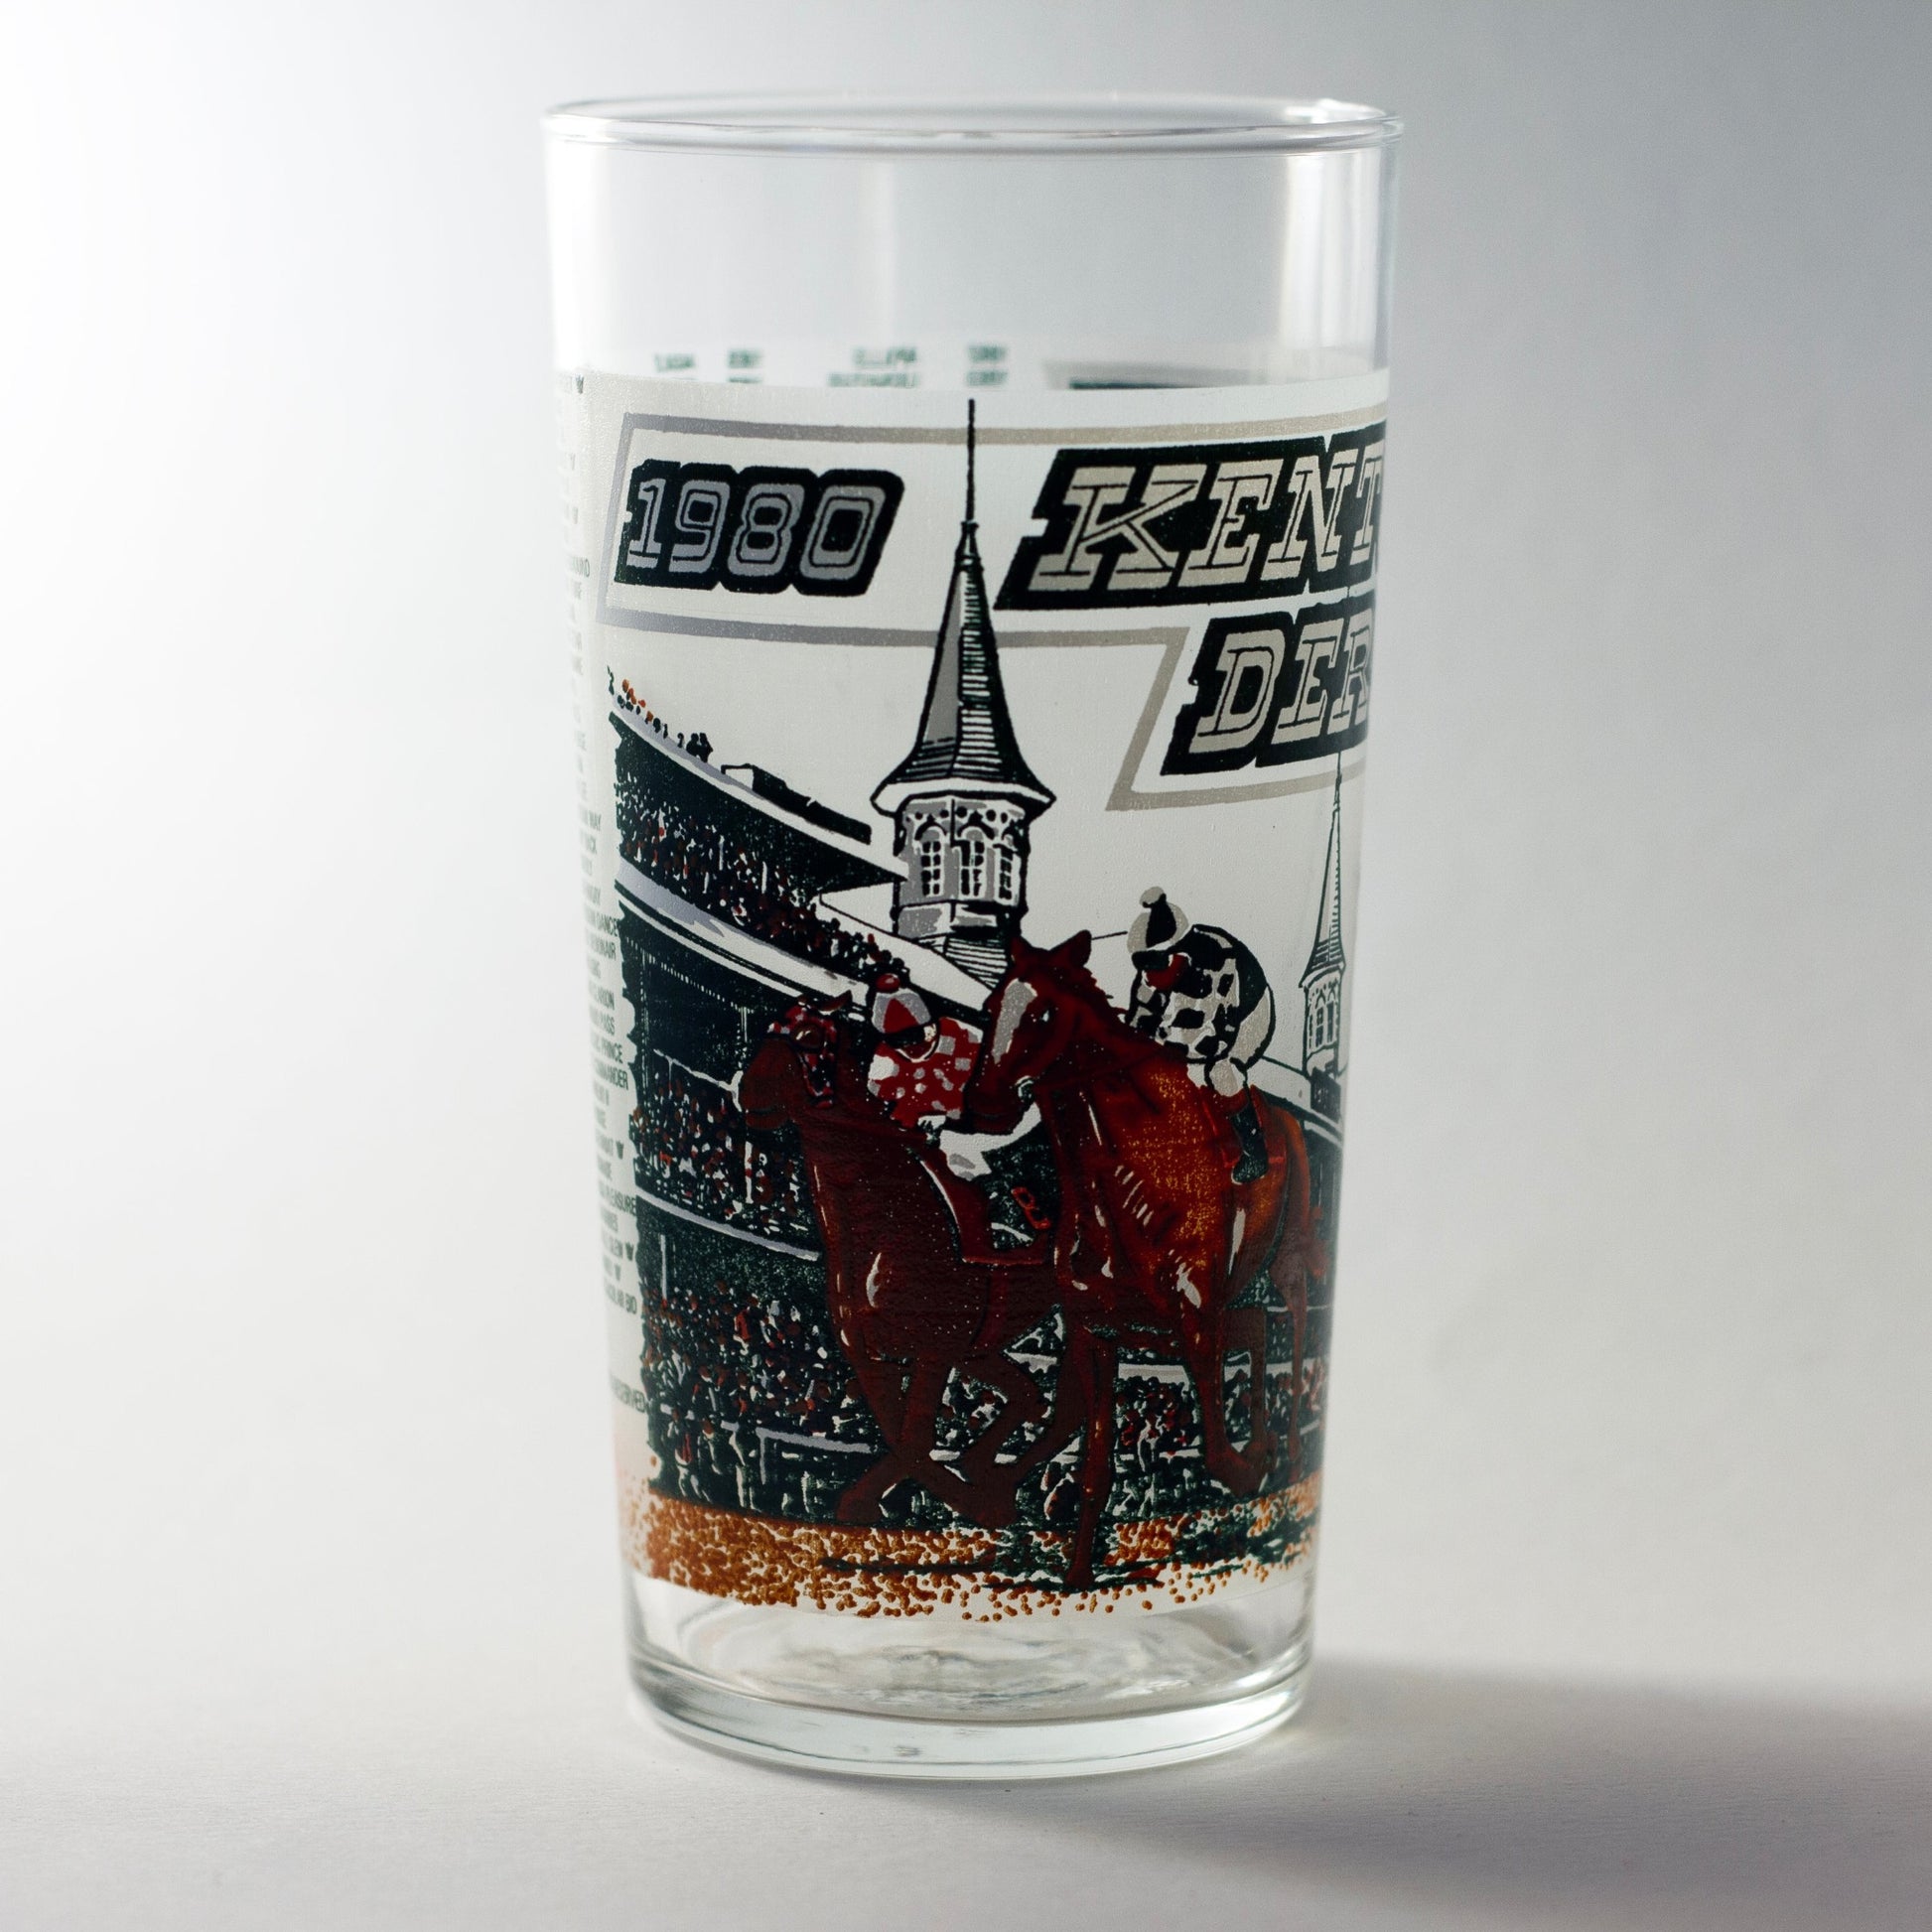 1980 Kentucky Derby Glass #106